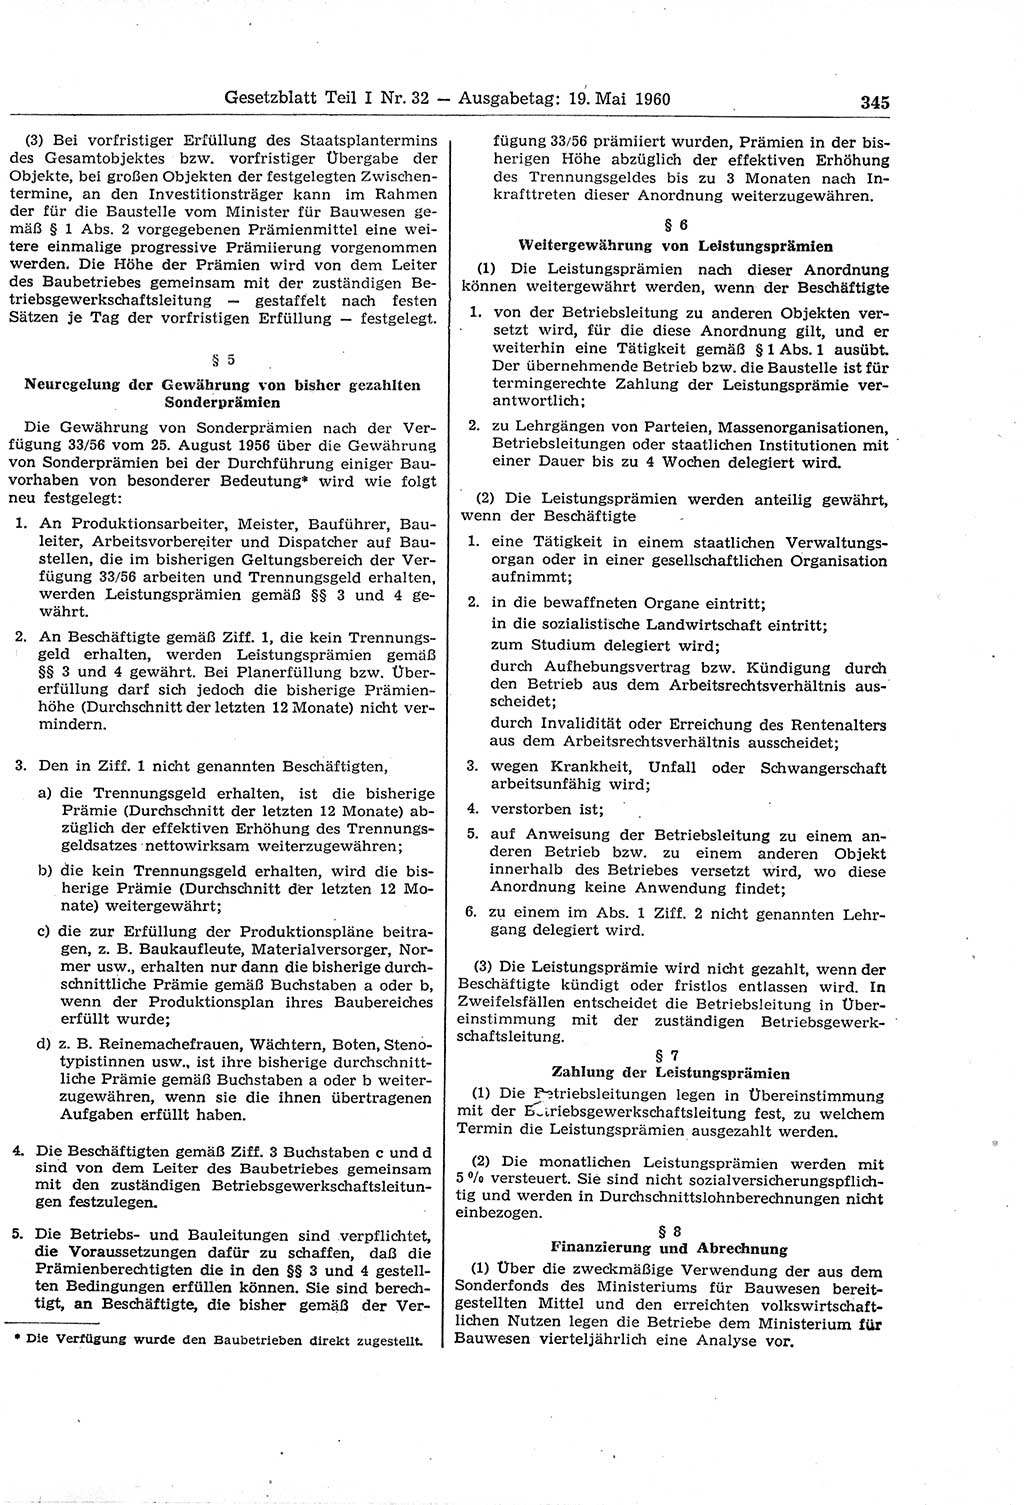 Gesetzblatt (GBl.) der Deutschen Demokratischen Republik (DDR) Teil Ⅰ 1960, Seite 345 (GBl. DDR Ⅰ 1960, S. 345)